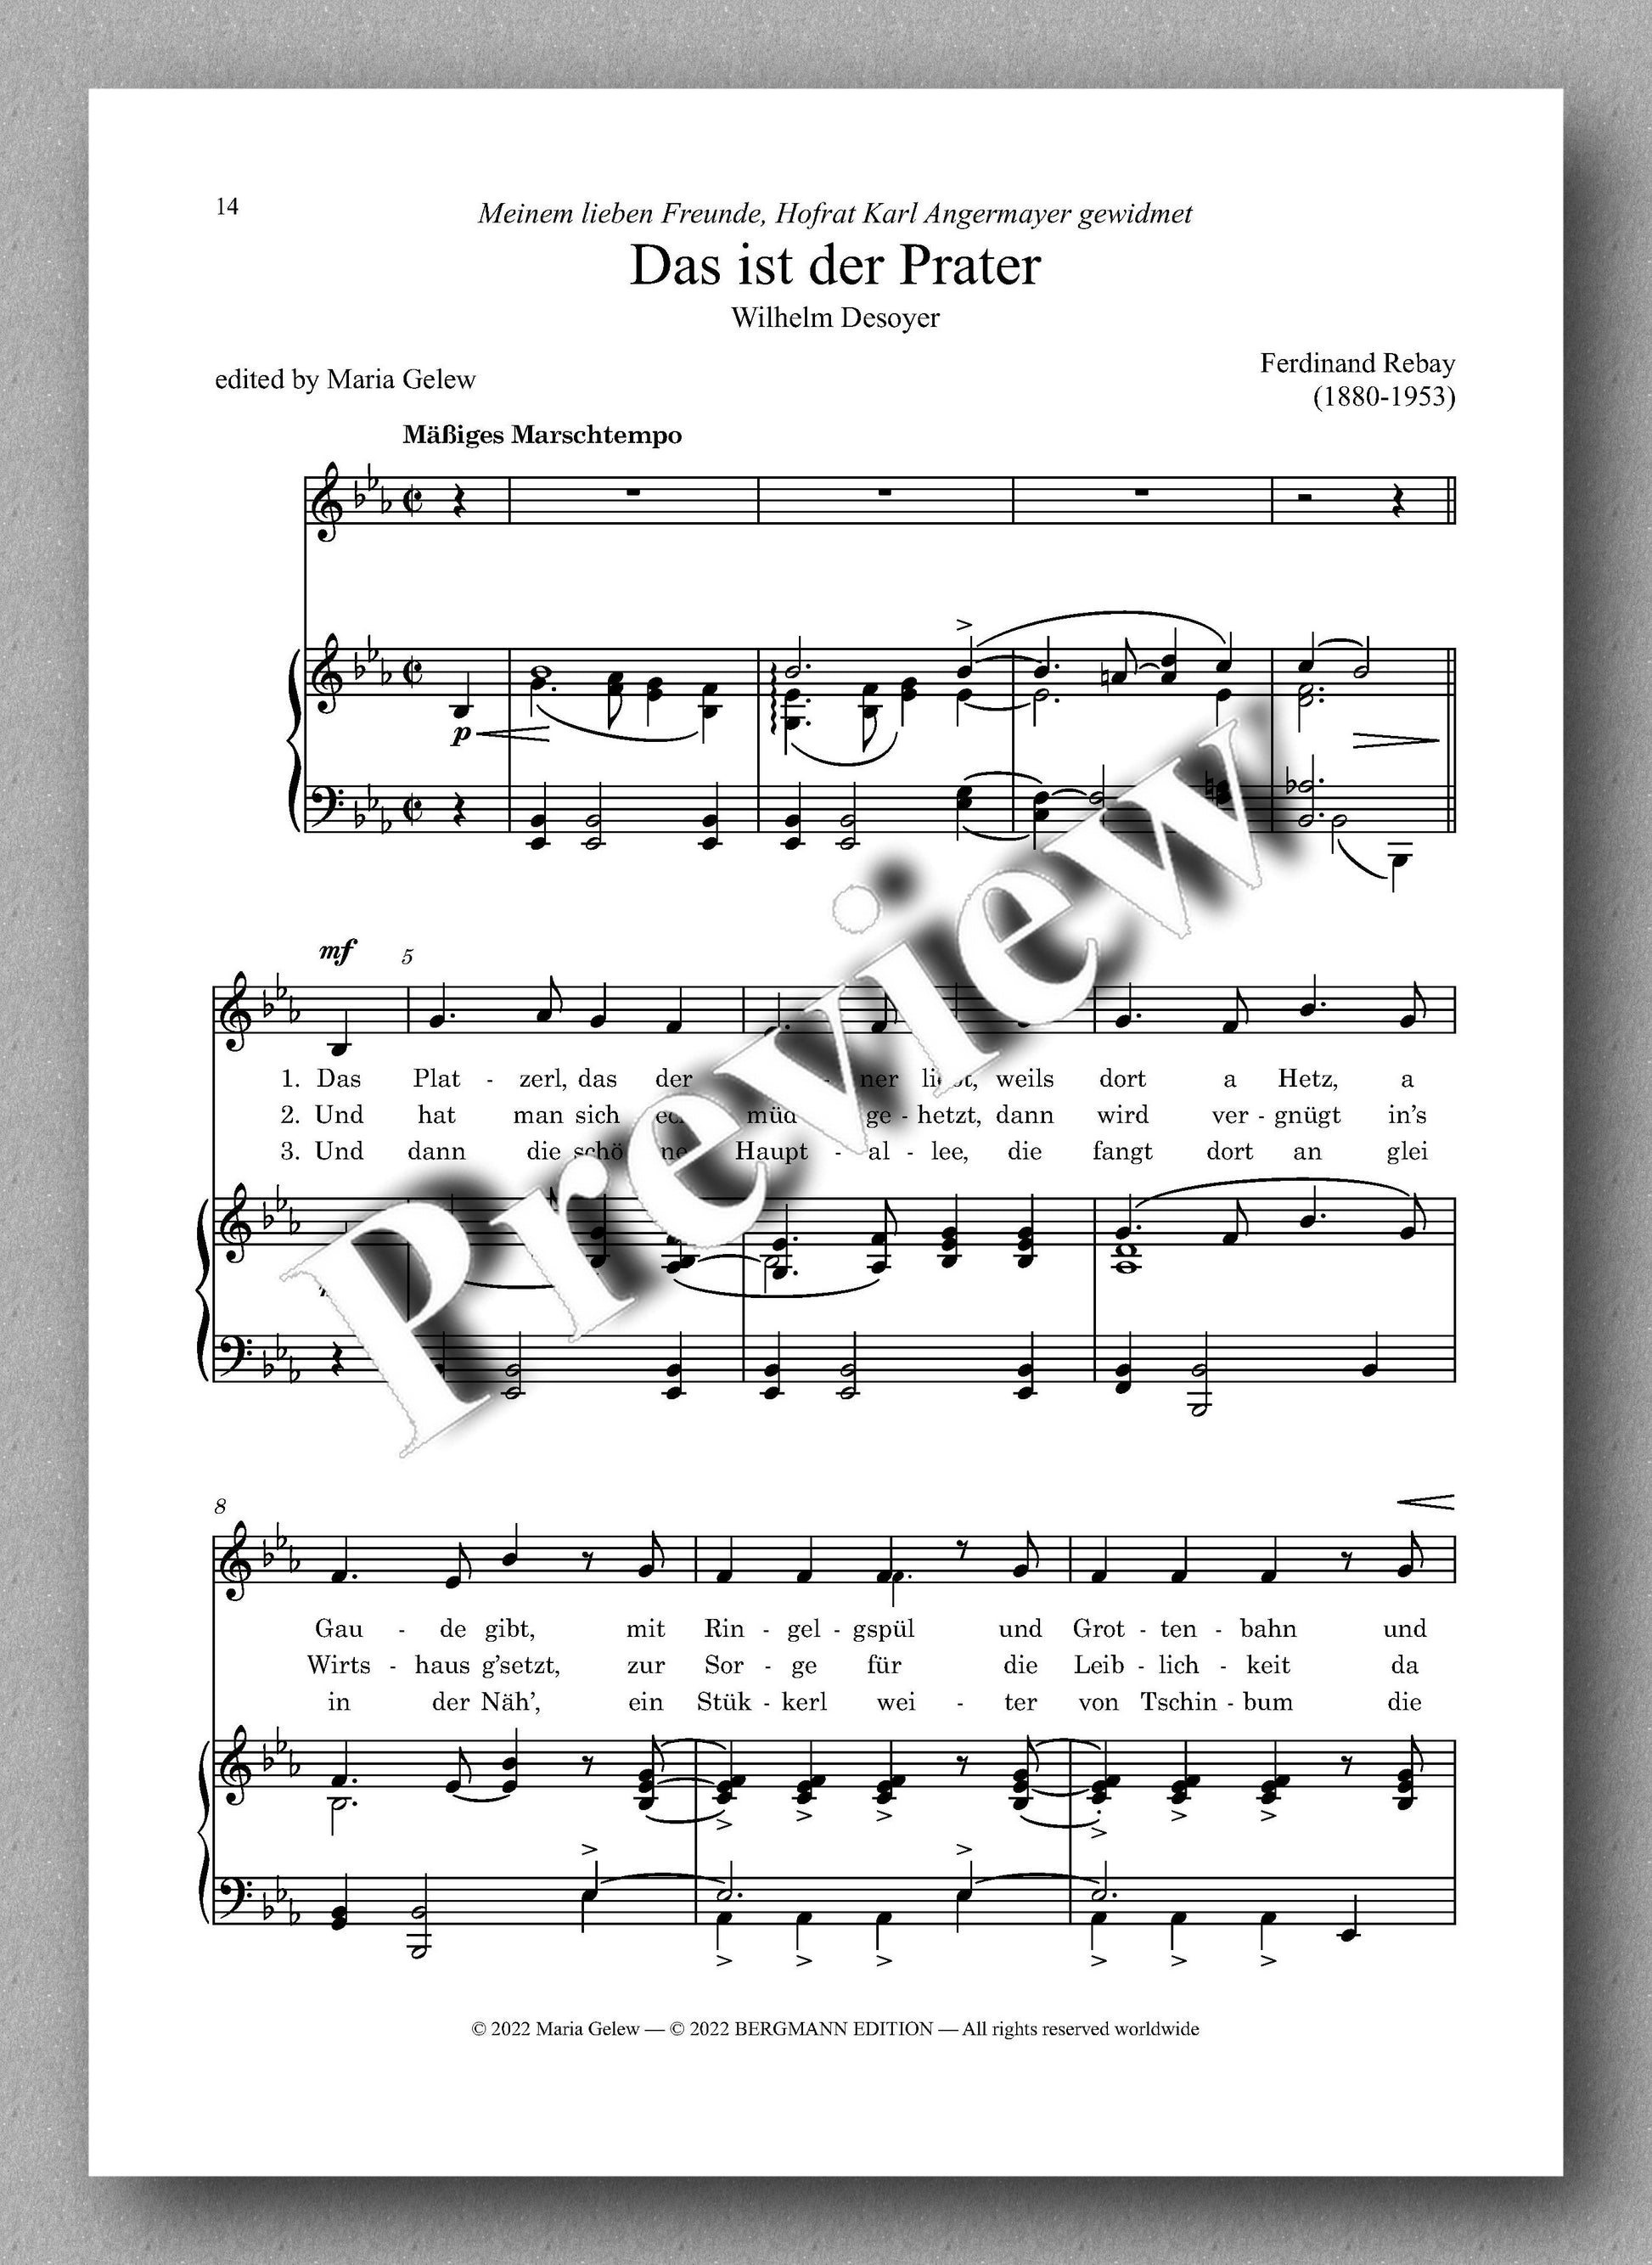 Ferdinand Rebay, Lieder nach Gedichten von Wilhelm Desoyer - preview of the music score 3